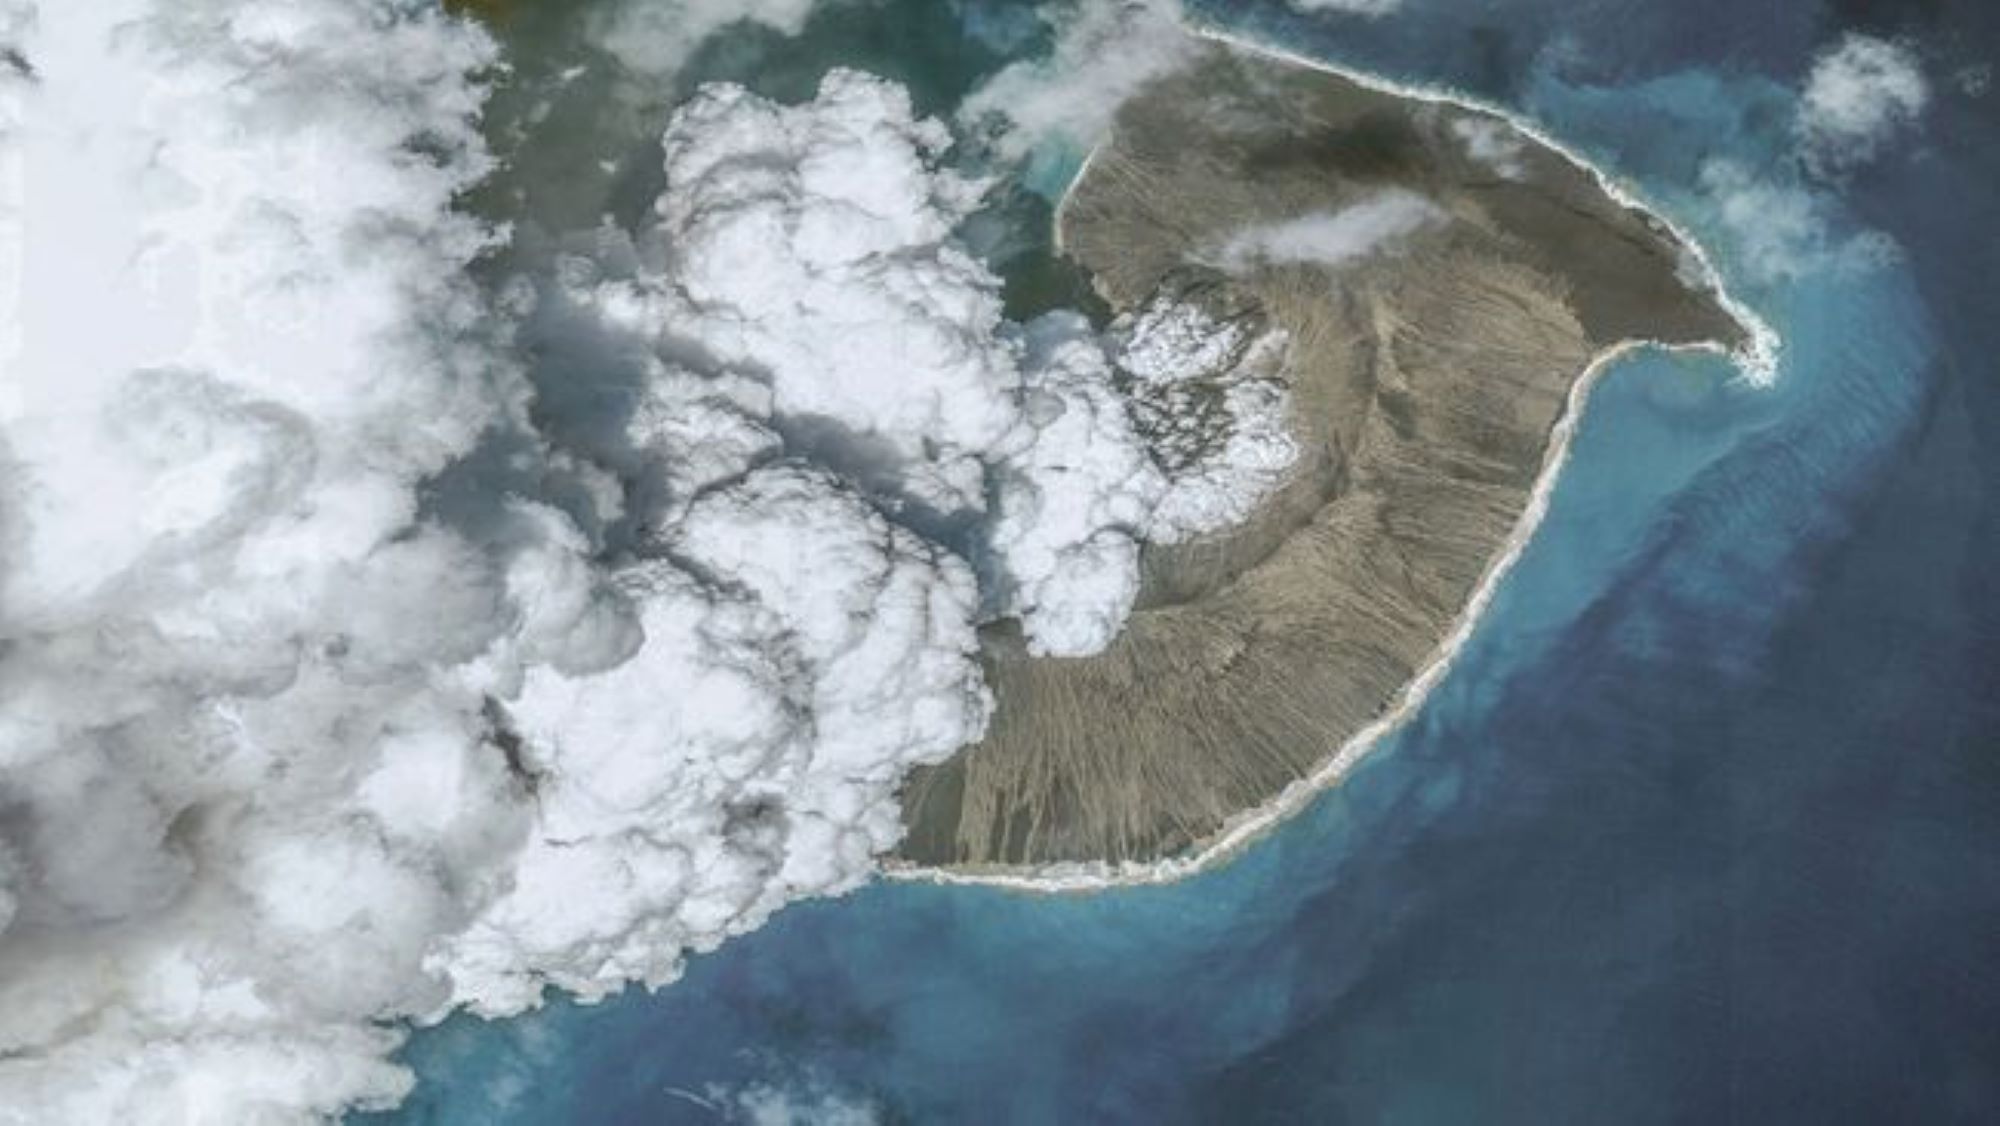 Вид с воздуха на извержение вулкана Тонга в 2022 году. Мы видим пар и пепел, поднимающиеся из вулкана, окруженного водой.